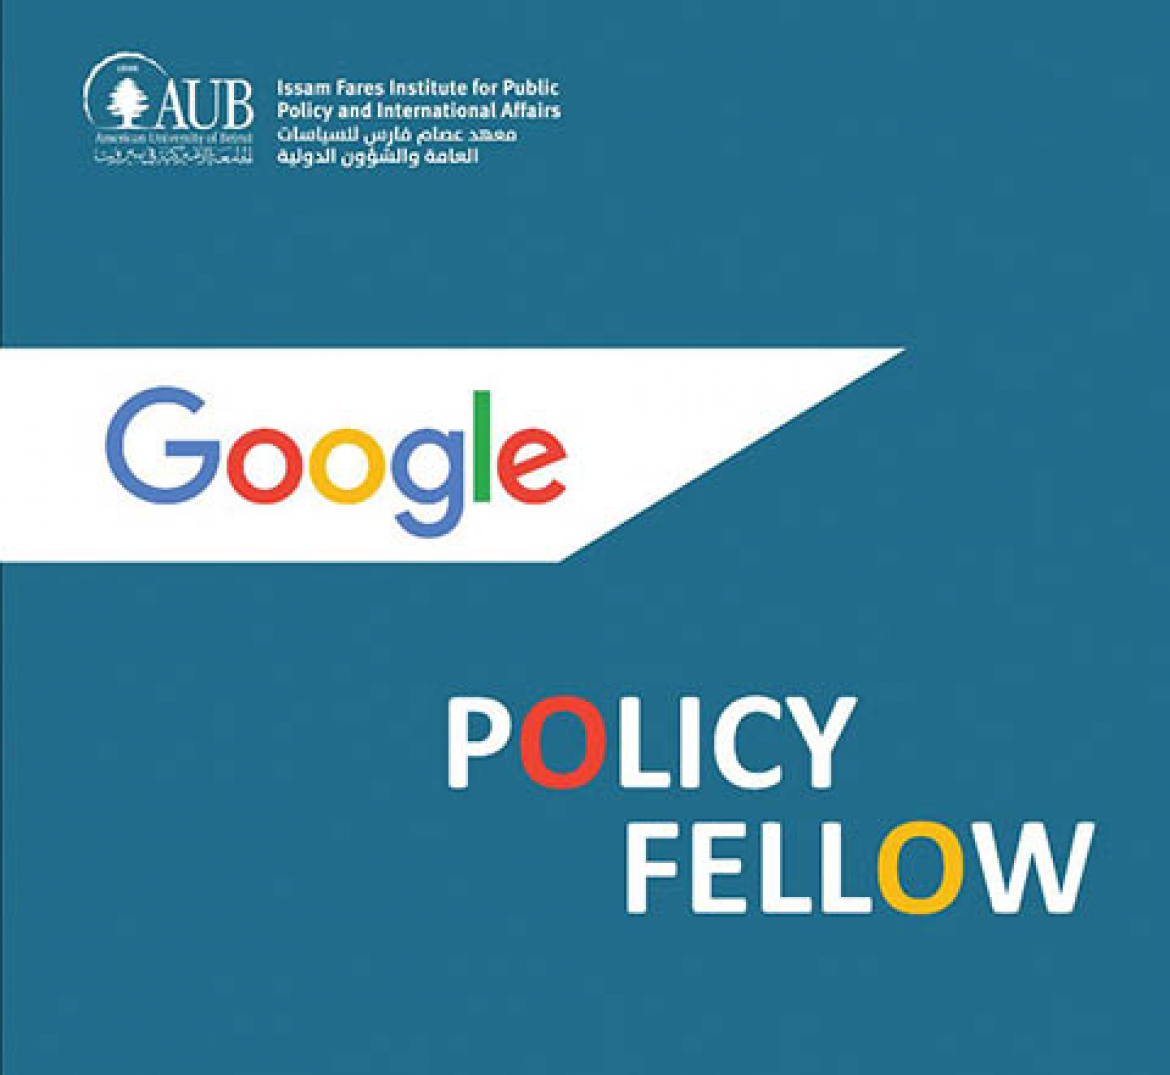 برنامج الزمالة مع "جوجل" حول السياسات العامة في الجامعة الأميركية في بيروت